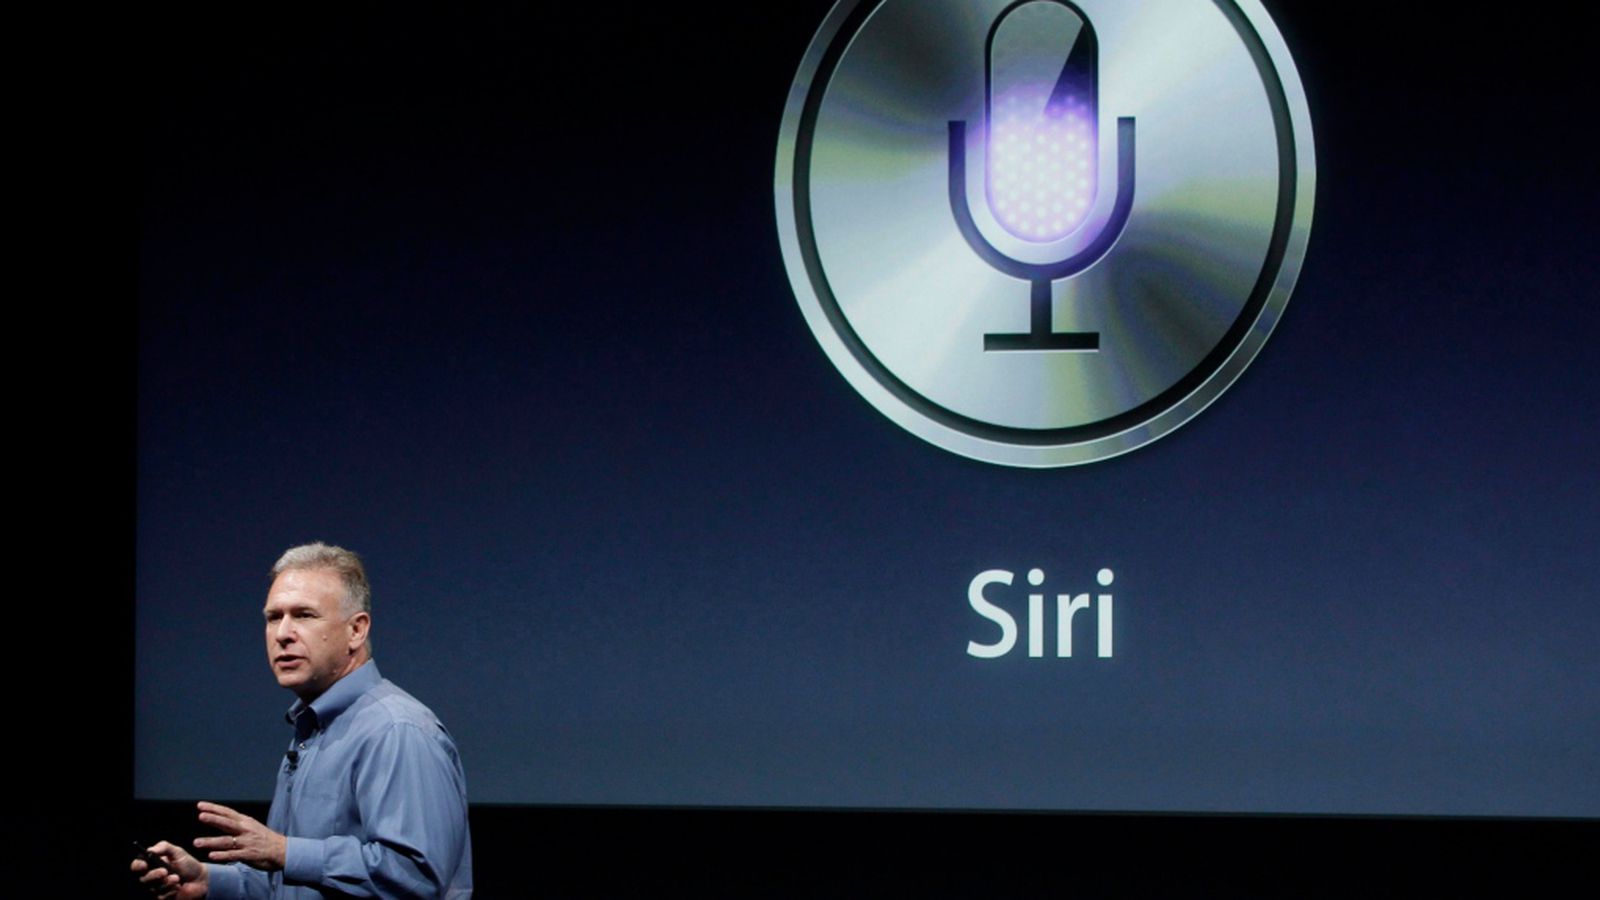 Insinyur Apple dikatakan sedang mengerjakan AI mirip ChatGPT meskipun ada kekurangan desain Siri